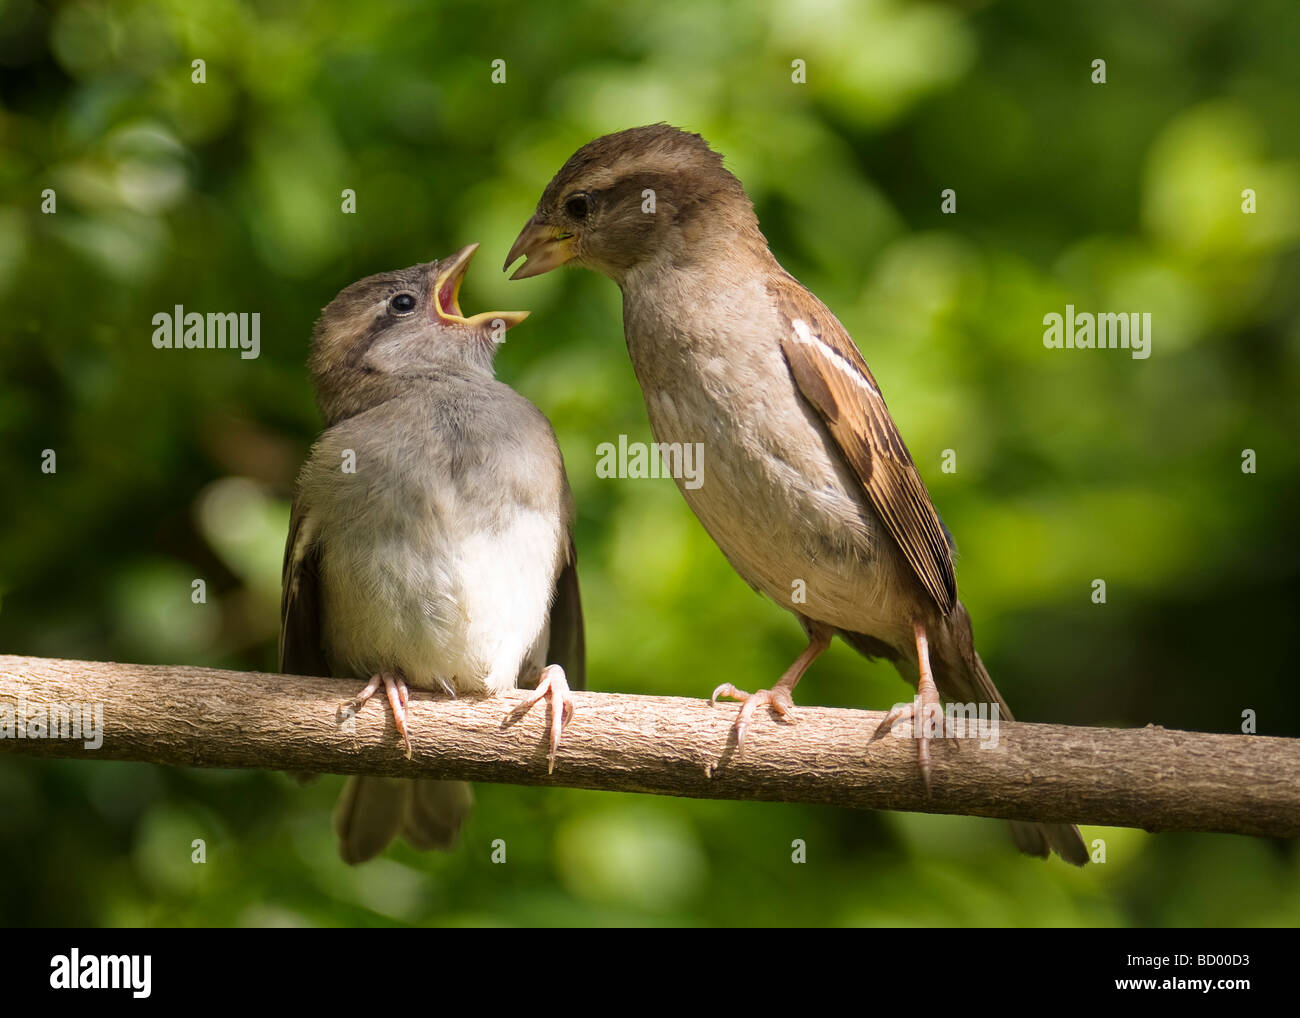 Young House Sparrow Passer domesticus être nourris par le parent comme un oiseau sur une branche. Banque D'Images